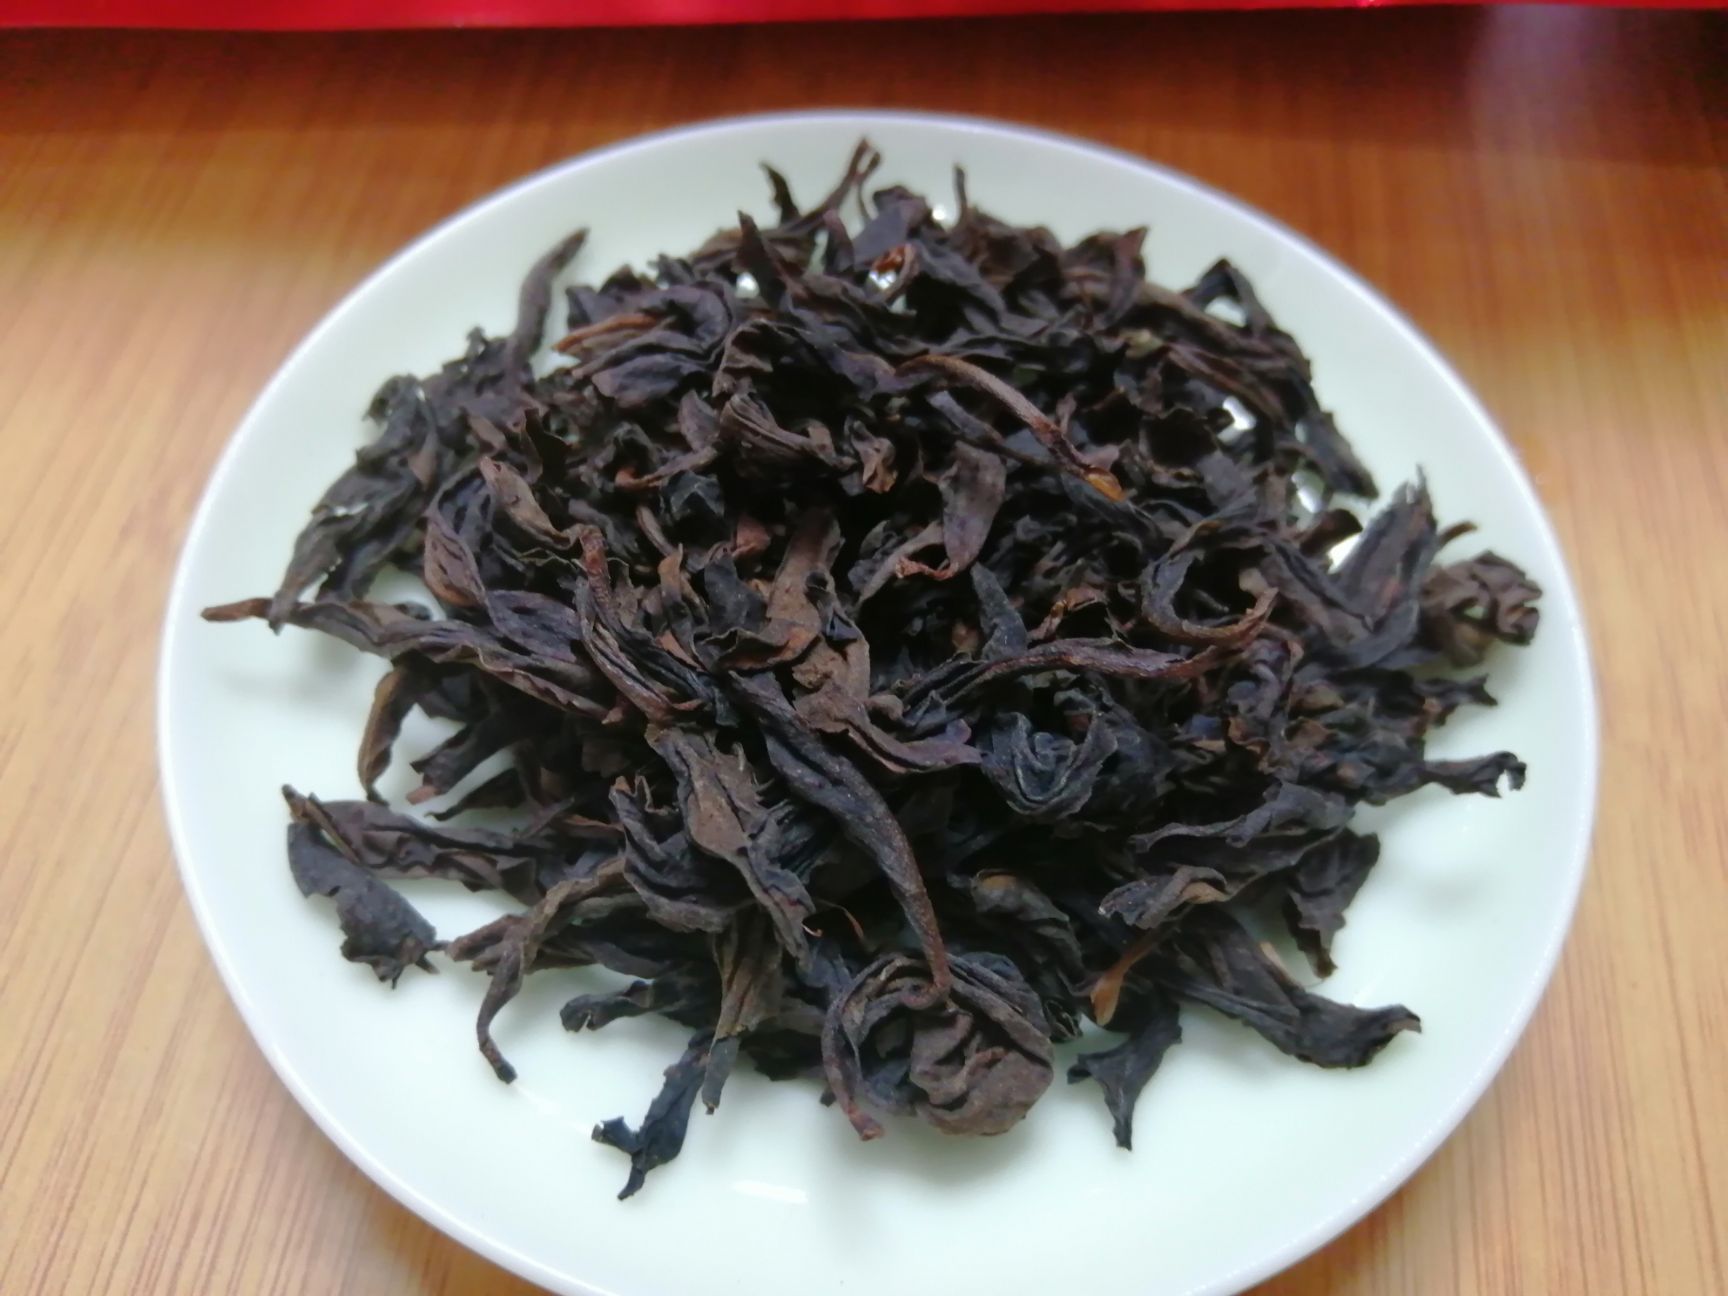 武夷岩茶大红袍 此茶产于福建省武夷大红袍,早春茶,一袋一斤